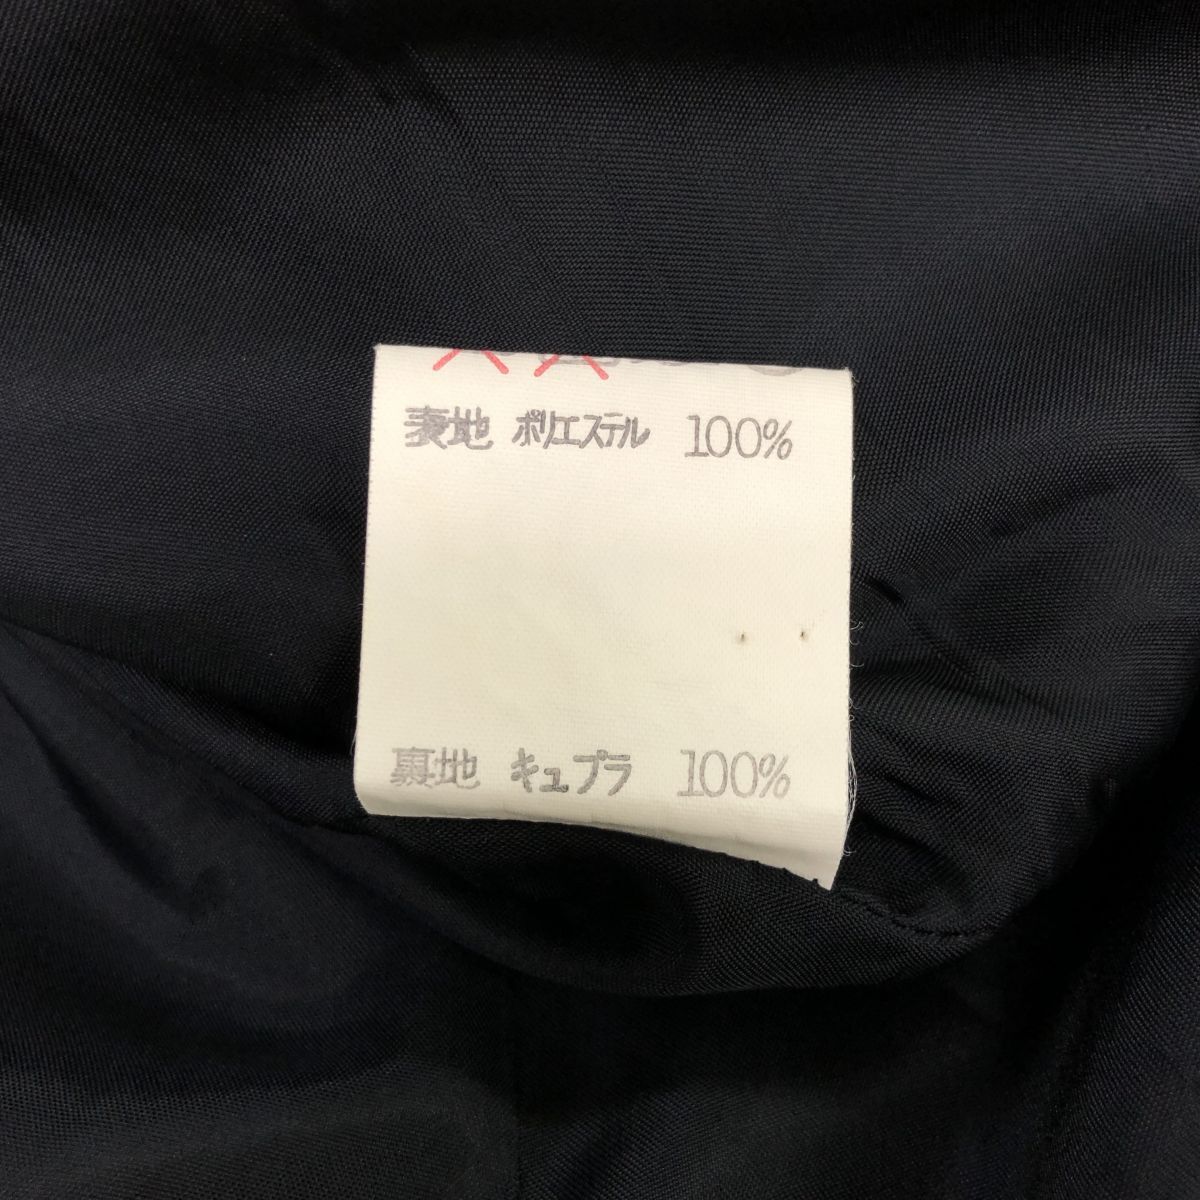 A1883-U*YUKI TORII Yuki Torii формальный одежда длинный One-piece короткий рукав подкладка есть одноцветный простой сверху товар траурный костюм *size13 черный полиэстер 